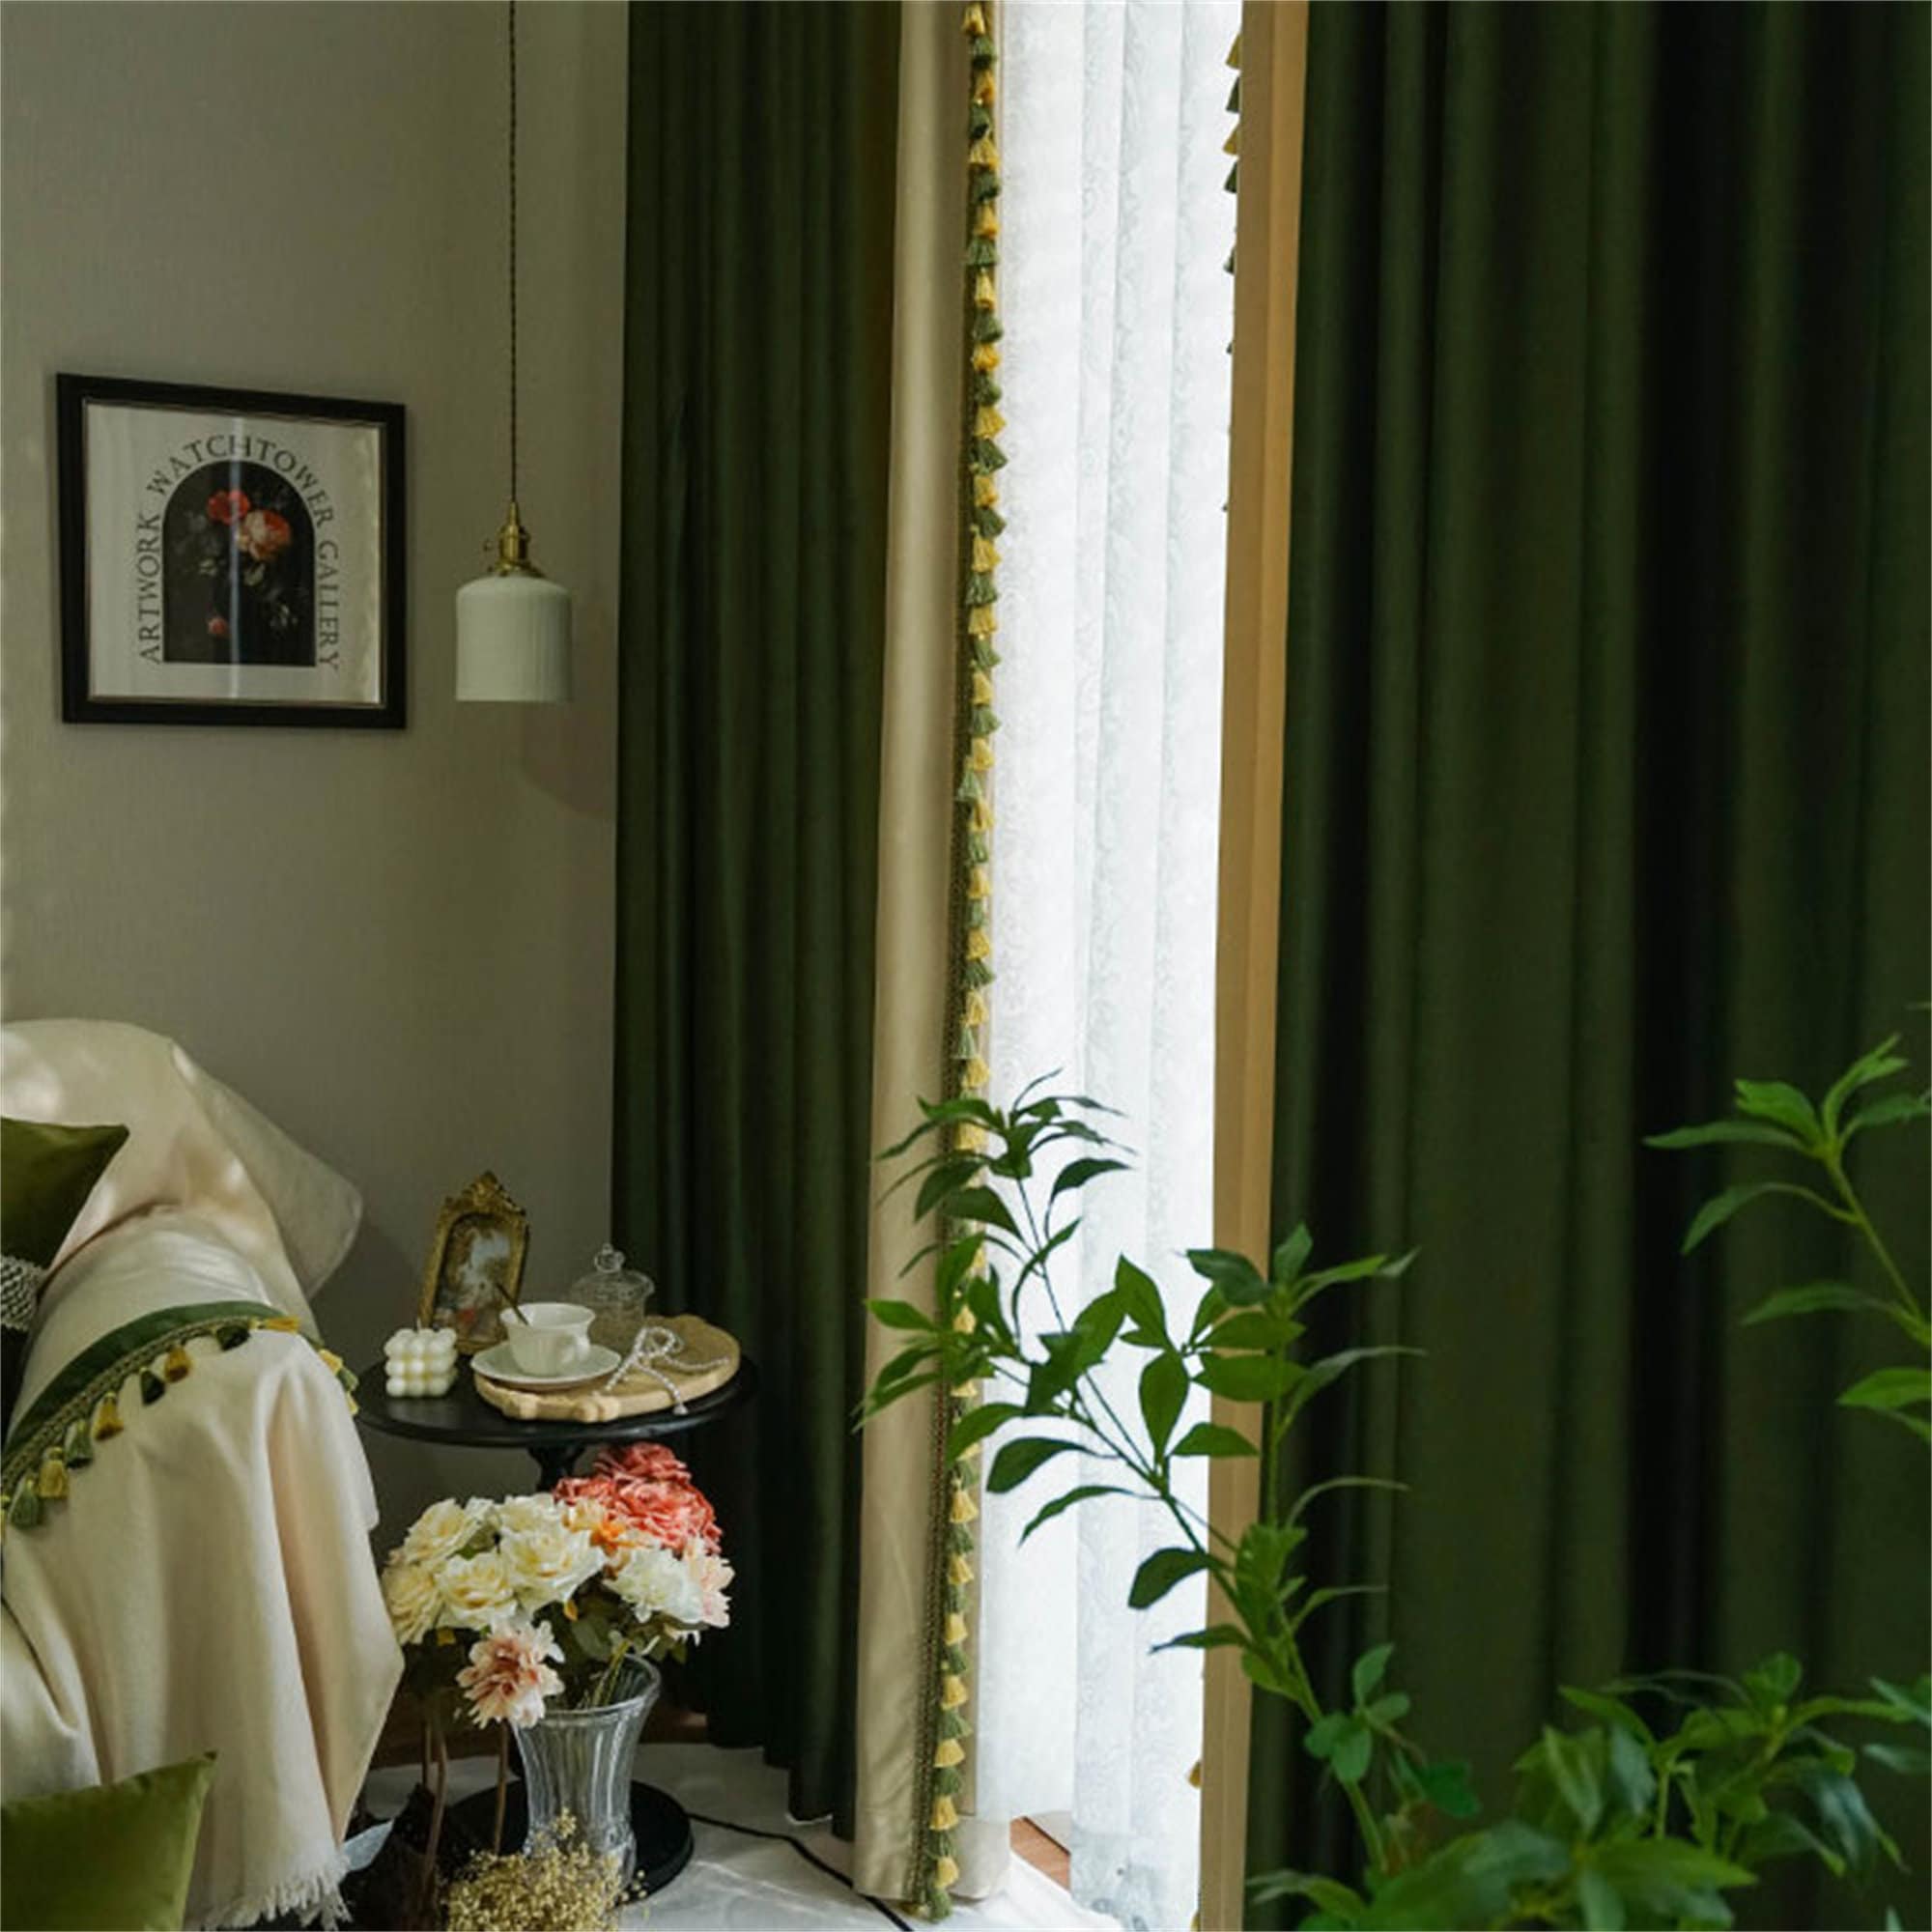 274 Cm 108 Wide Moss Green Linen Curtain. Green Bedroom Curtain